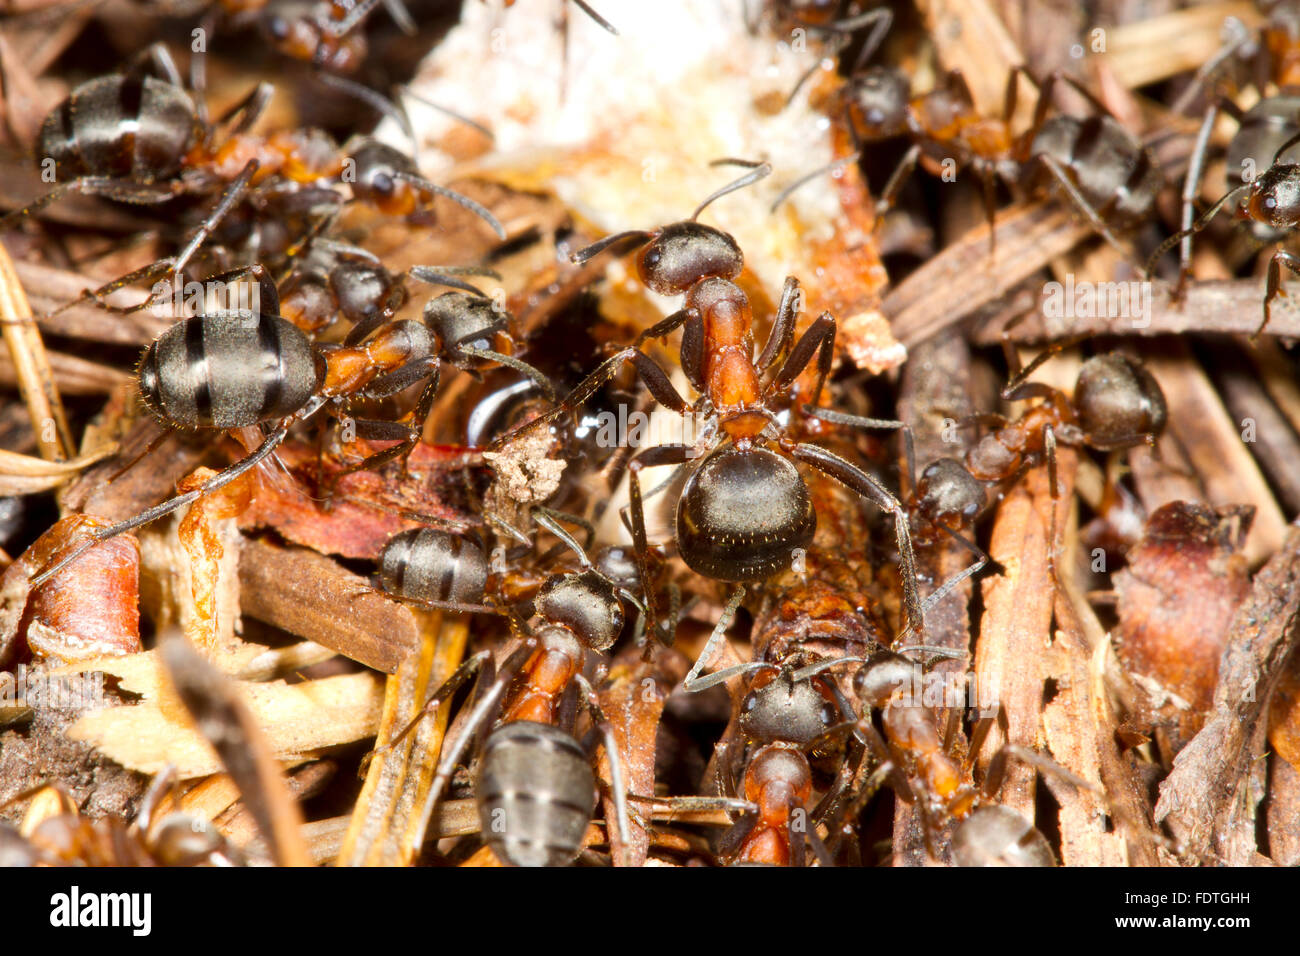 Hormiga de madera peludo (Formica lugubis) trabajadores en un nido montículo. Shropshire, Inglaterra. De septiembre. Foto de stock